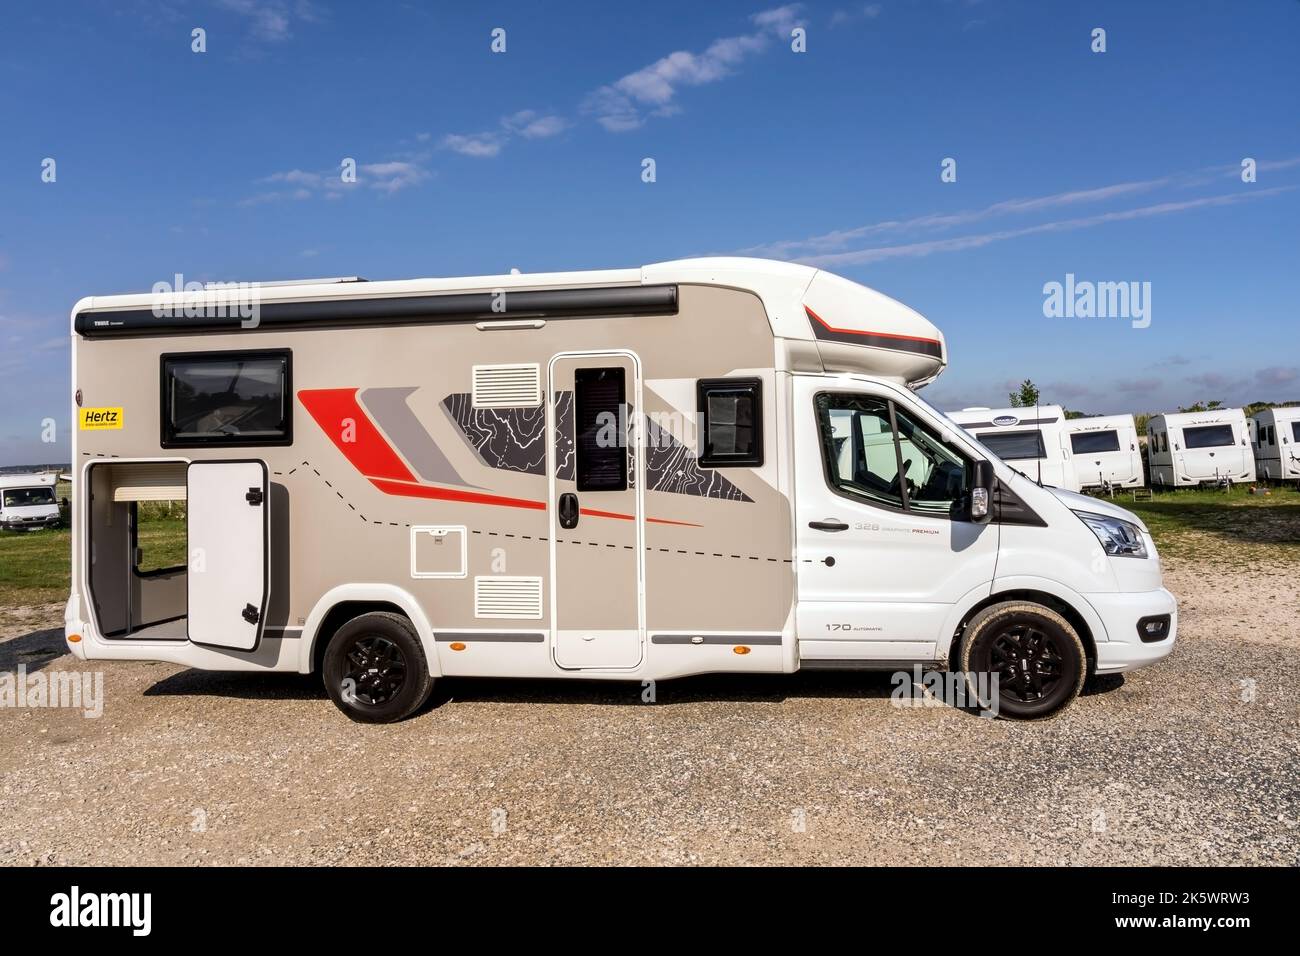 Jouy le Chatel, FRANKREICH - 05.08.2022: Moderner Campingwagen auf dem Mietparkplatz. Urlaubsreise im Reisemobil-Konzept. Fotos in hoher Qualität Stockfoto